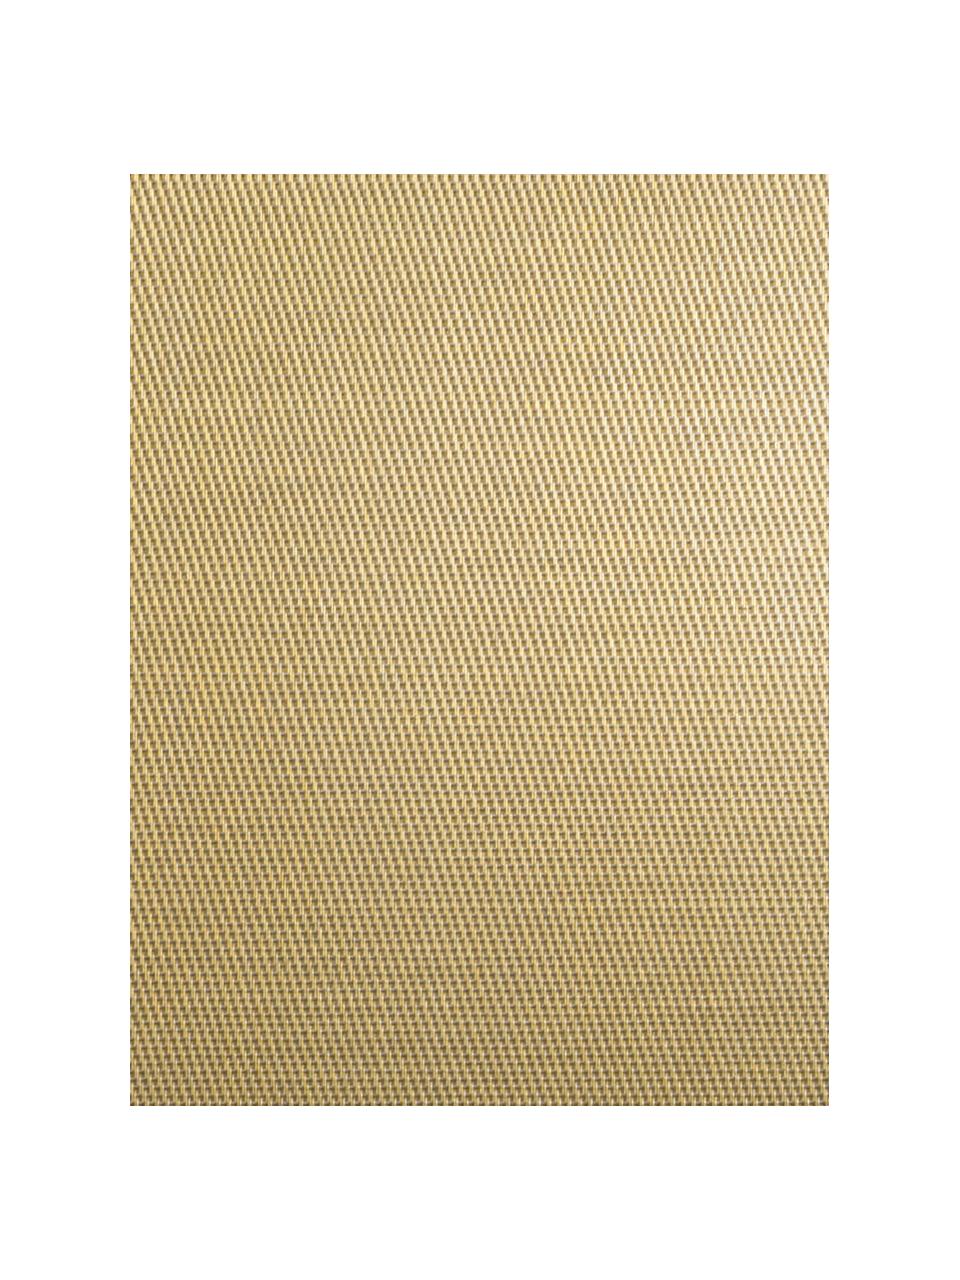 Kunststoff-Tischsets Trefl, 2 Stück, Kunststoff (PVC), Goldfarben, B 33 x L 46 cm